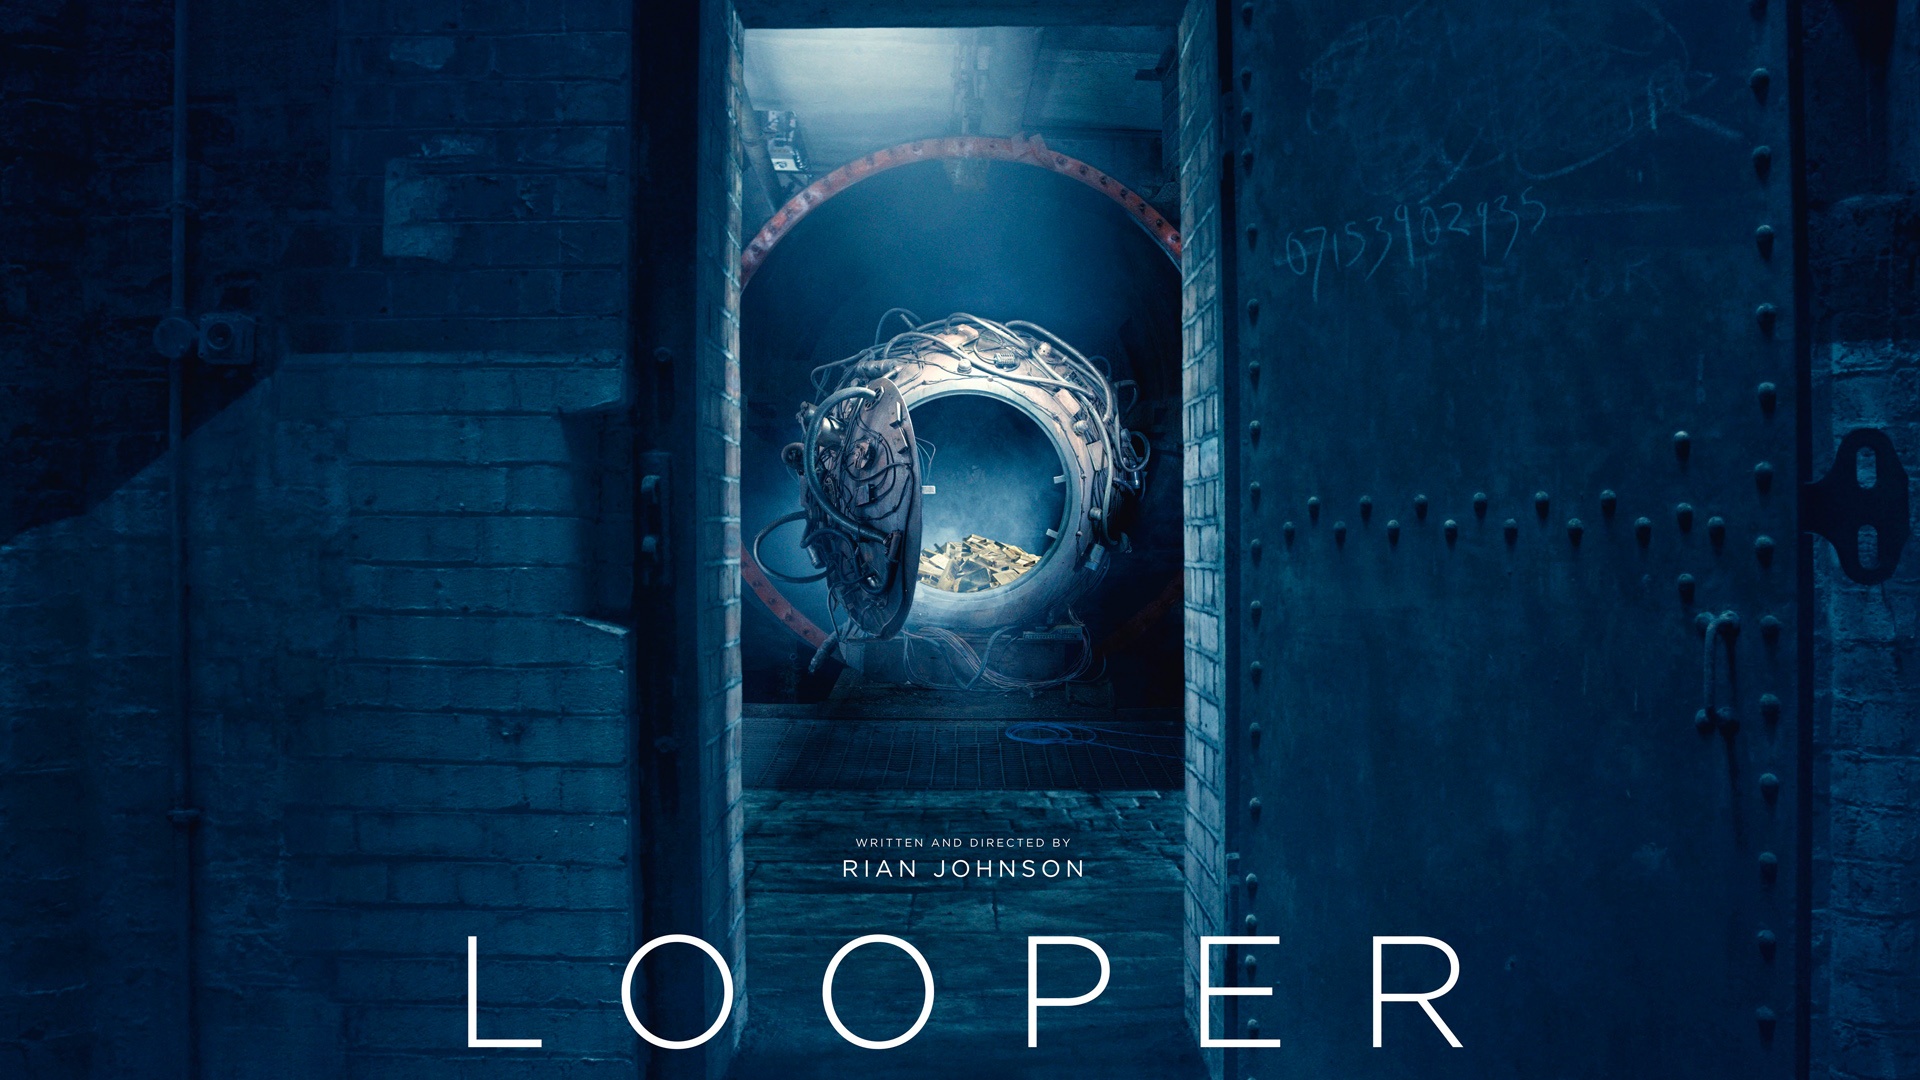 Looper 2012 Movie